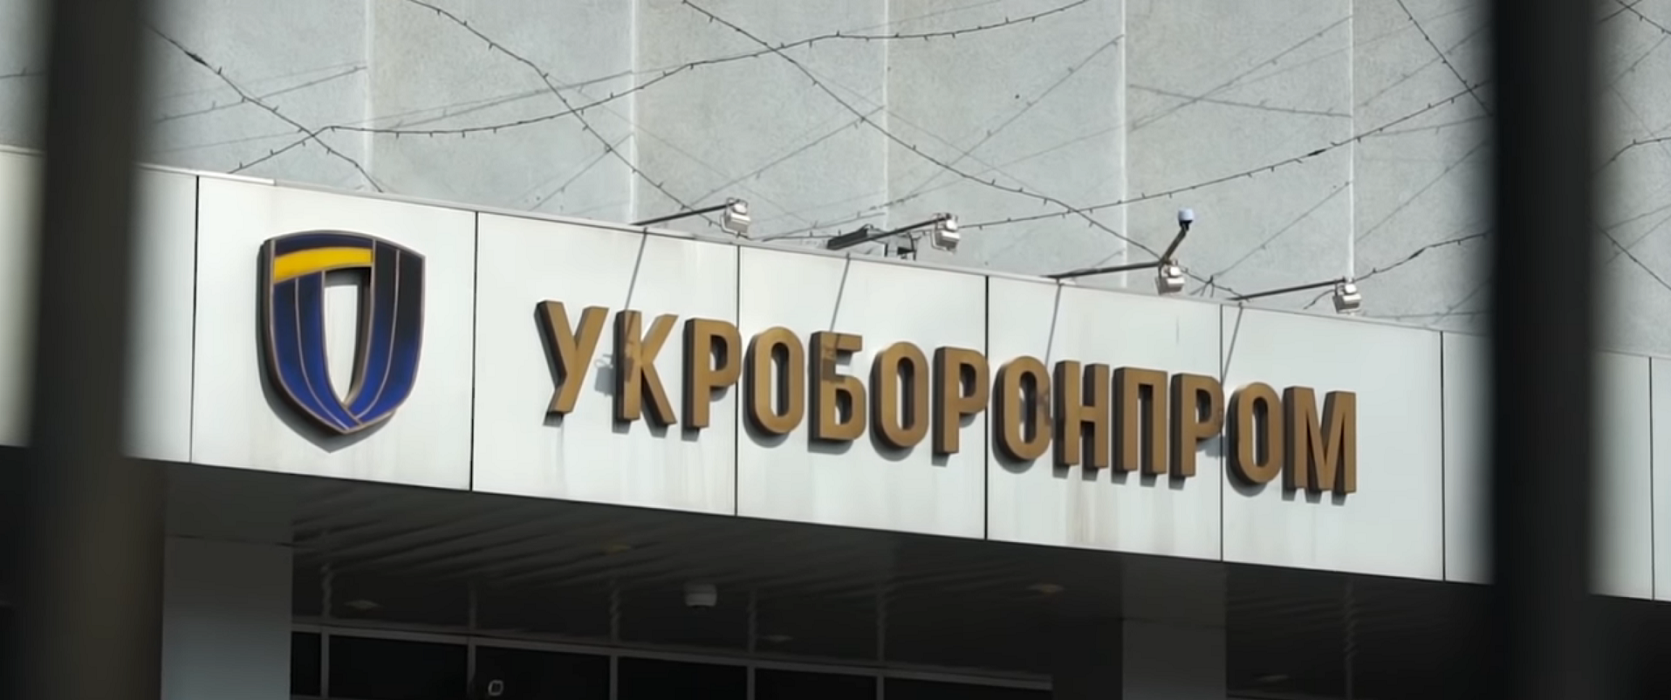 Коррупция в Укроборонпроме: расследование Бигуса серии 4-5 - фото 1